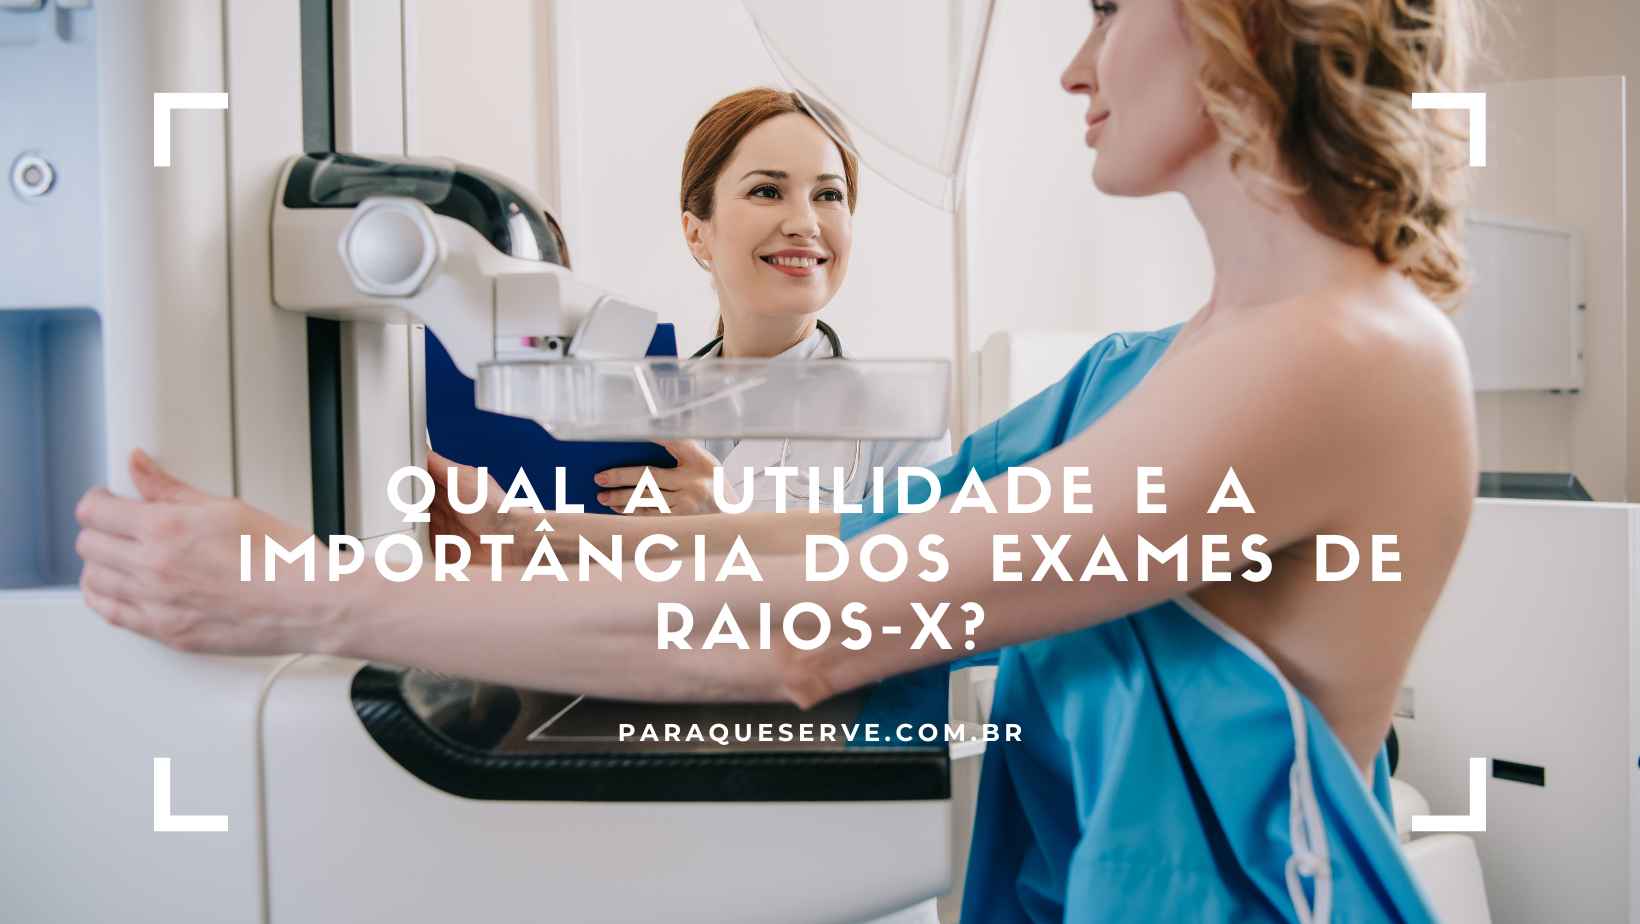 Qual a utilidade e a importância dos exames de raios-X?